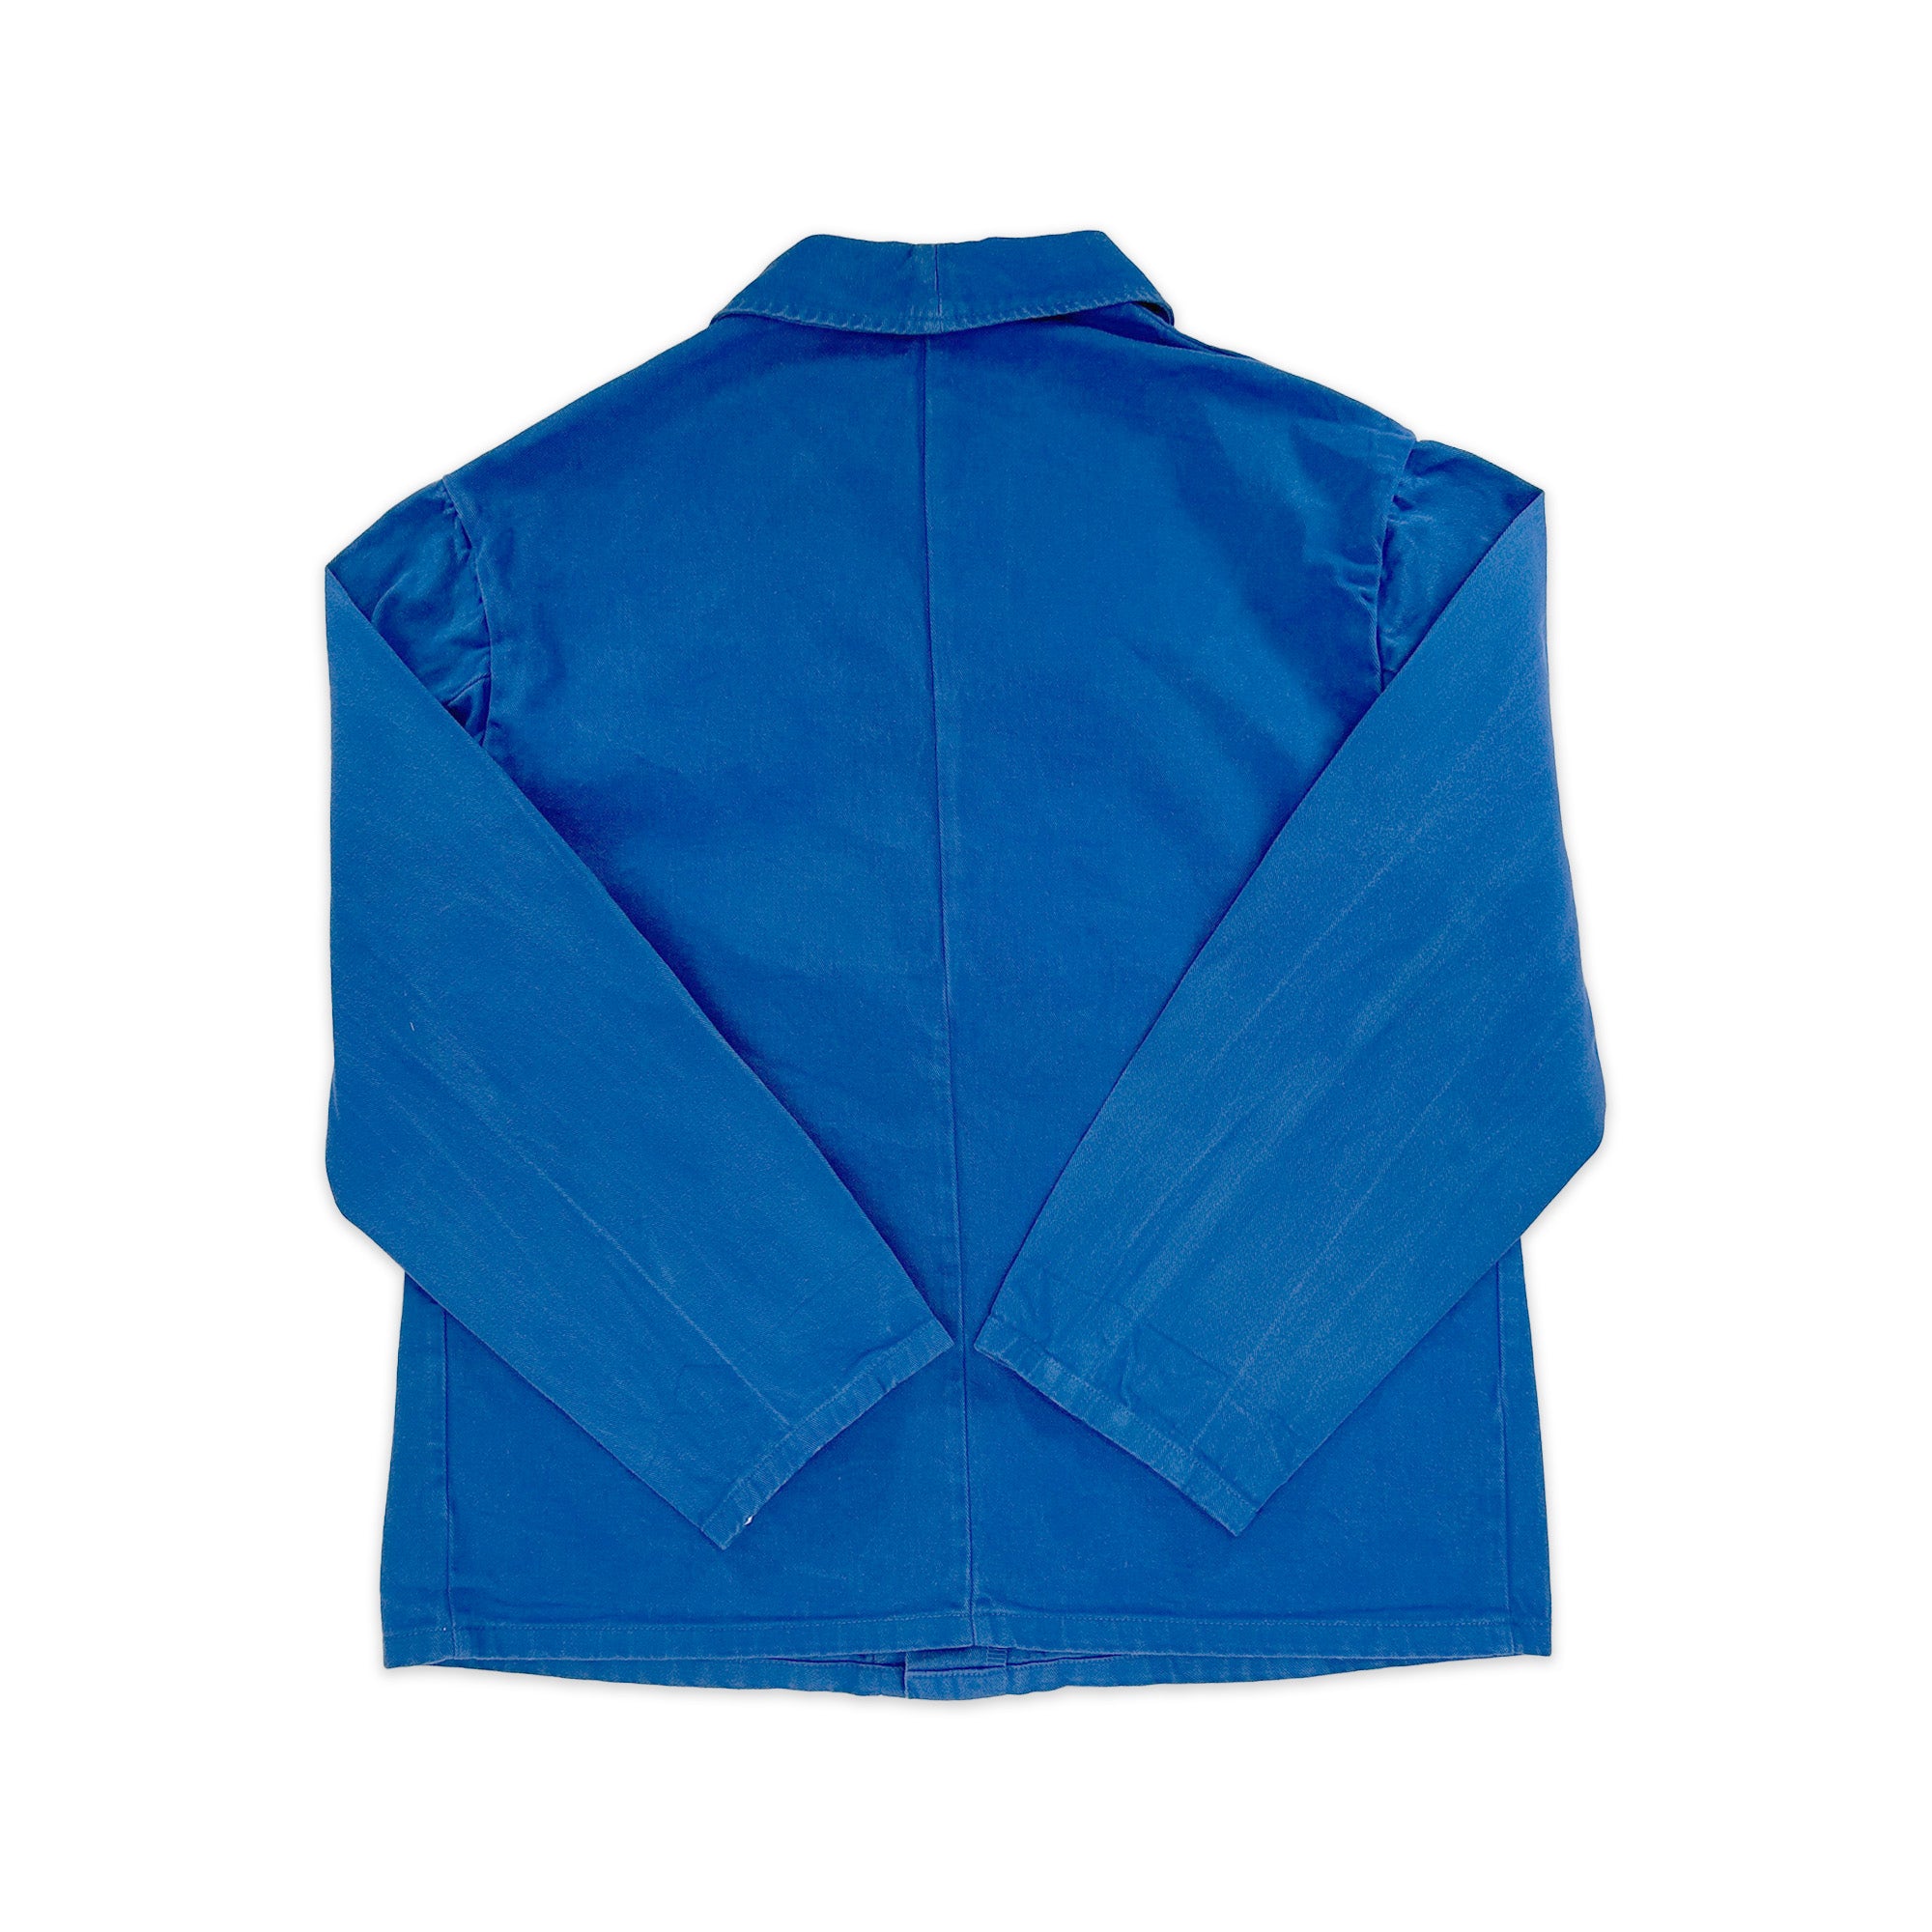 Vintage French Chore Jacket - Large - 0